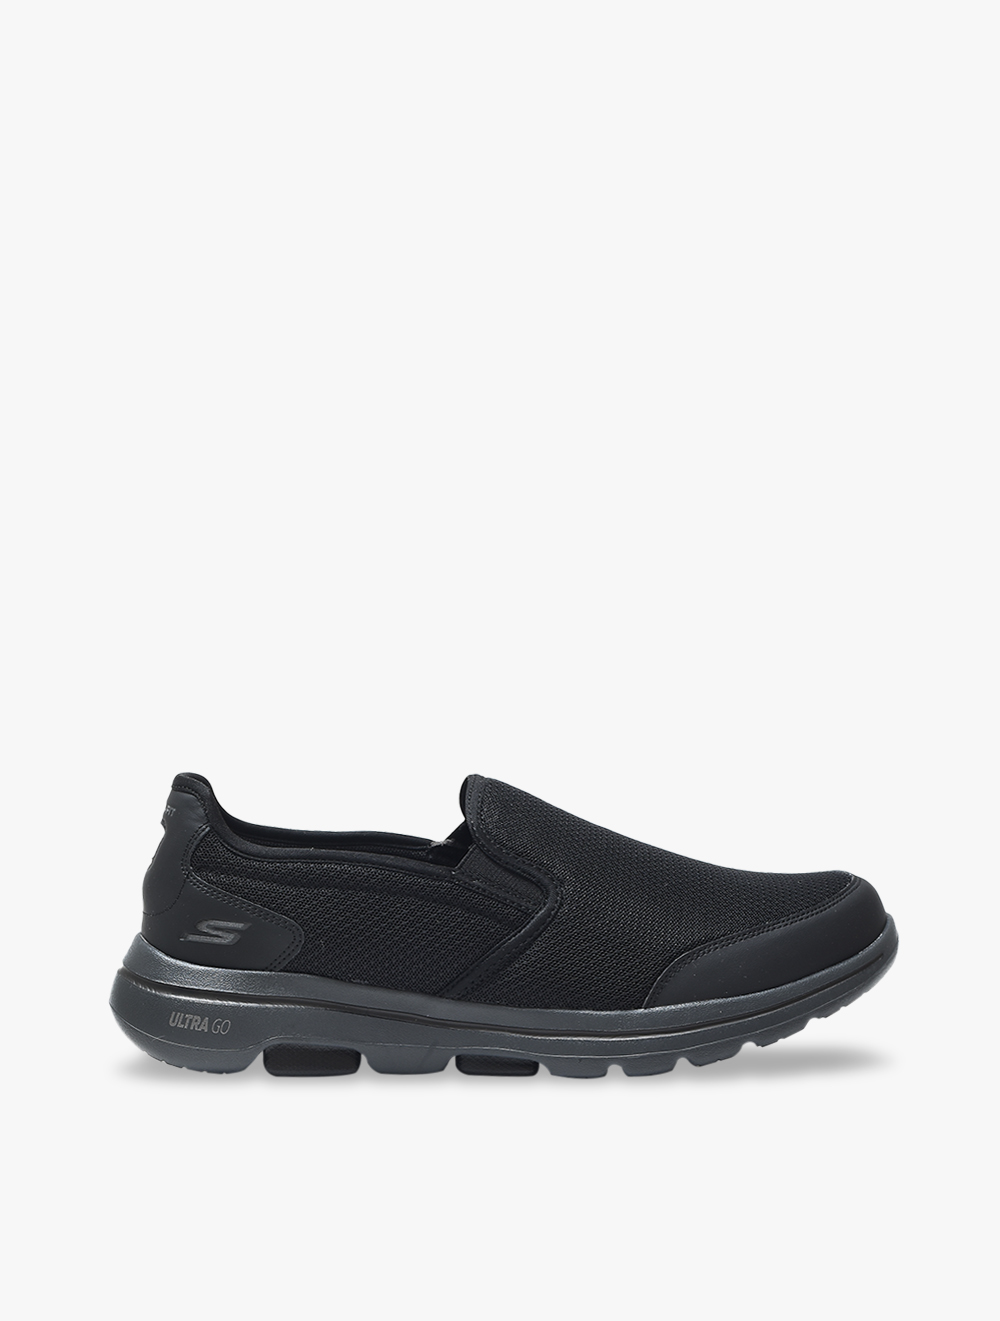 Skechers GOwalk 5 - Delco Mens Sneaker Shoes - Black